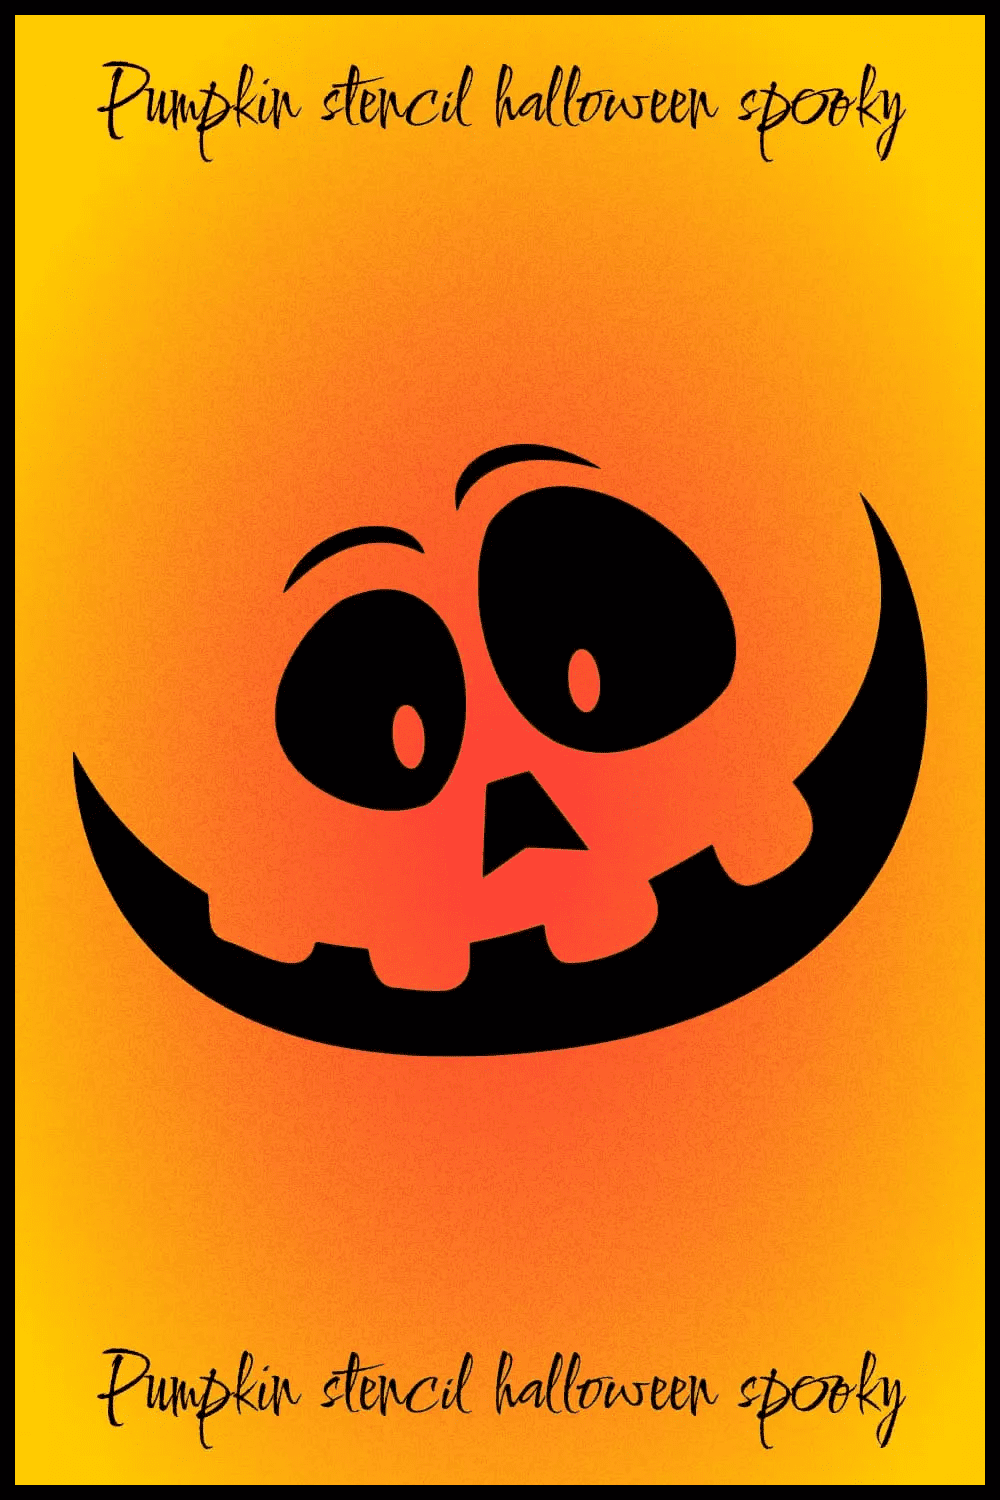 Cheerful pumpkin smile on orange background.